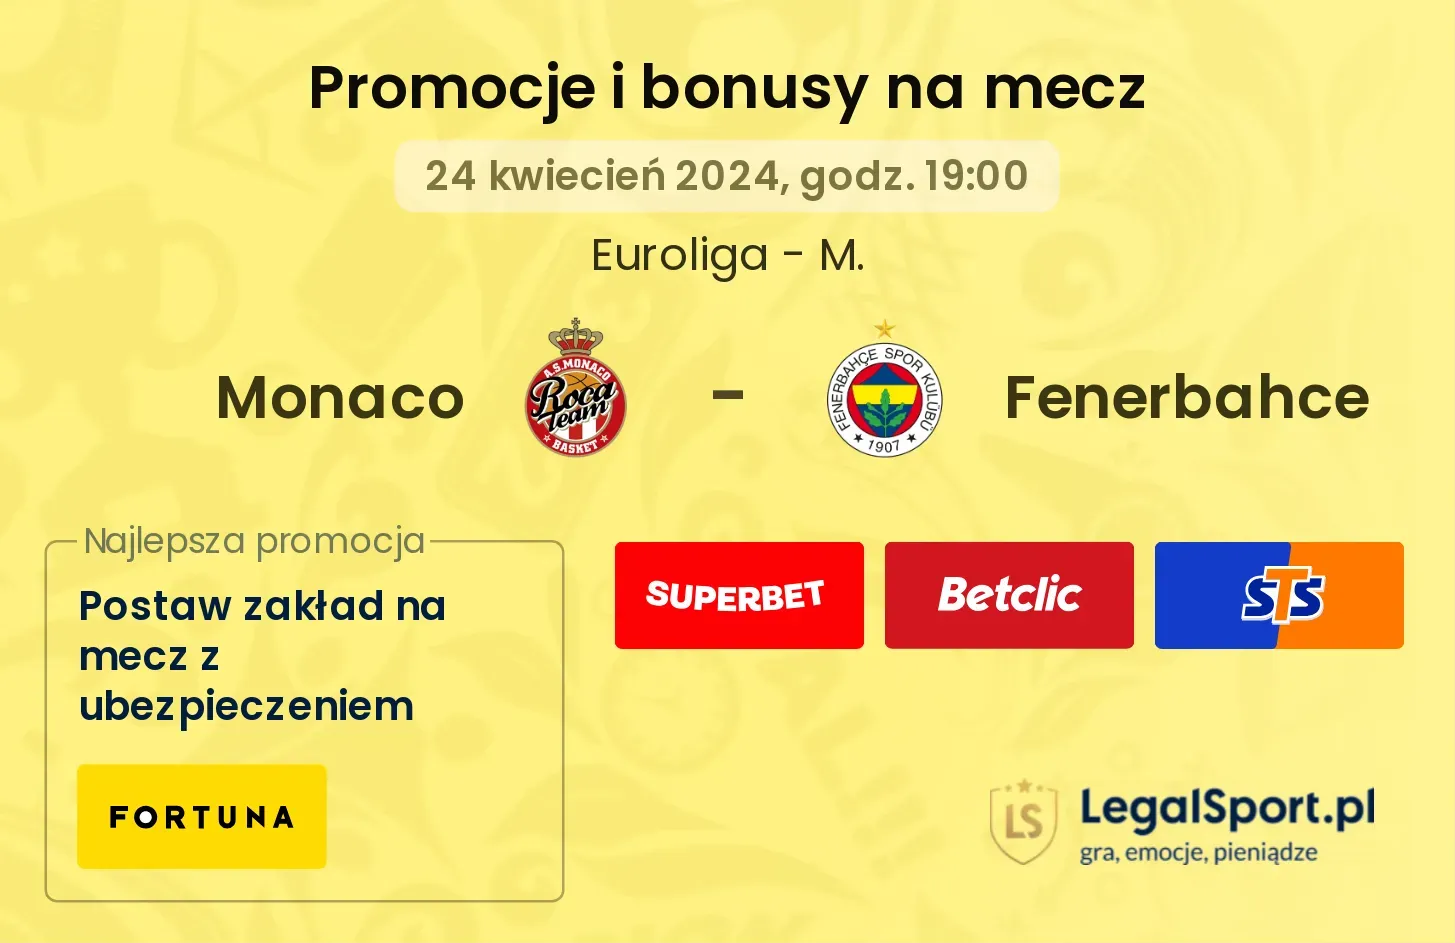 Monaco - Fenerbahce promocje bonusy na mecz